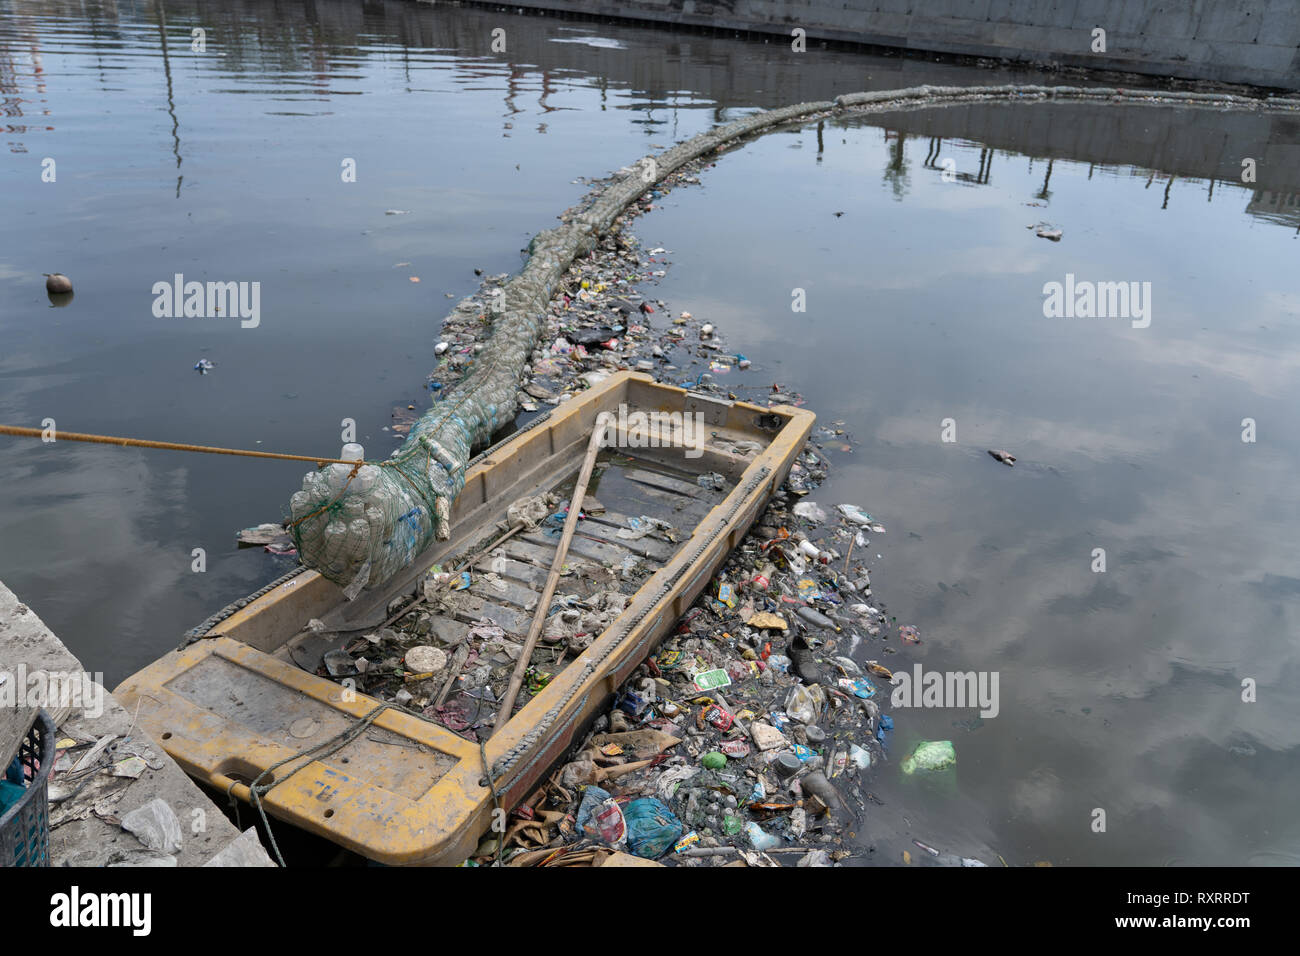 Cebu City, Philippinen. 10. Mär 2019. Eine Barriere aus recycelten Plastikflaschen verpackt in die Verrechnung über einen Fluss verwendet Garbage, die sonst würde in den Ozean schwimmen zu fangen gespannt. Ein jüngster Bericht der NRO (GAIA) (Globale Allianz für thermische Nachverbrennungsanlage Alternativen) Highlights die schockierende Verwendung von Kunststoff innerhalb der Philippinen. Zahlen gehören rund 60 Milliarden Sachets zum Einmalgebrauch, 57 Millionen Tüten schätzungsweise 16,5 Milliarden kleiner Plastiktüten bekannt als "Labo" jährlich verwendet werden. Quelle: bildergallerie 2/Alamy leben Nachrichten Stockfoto